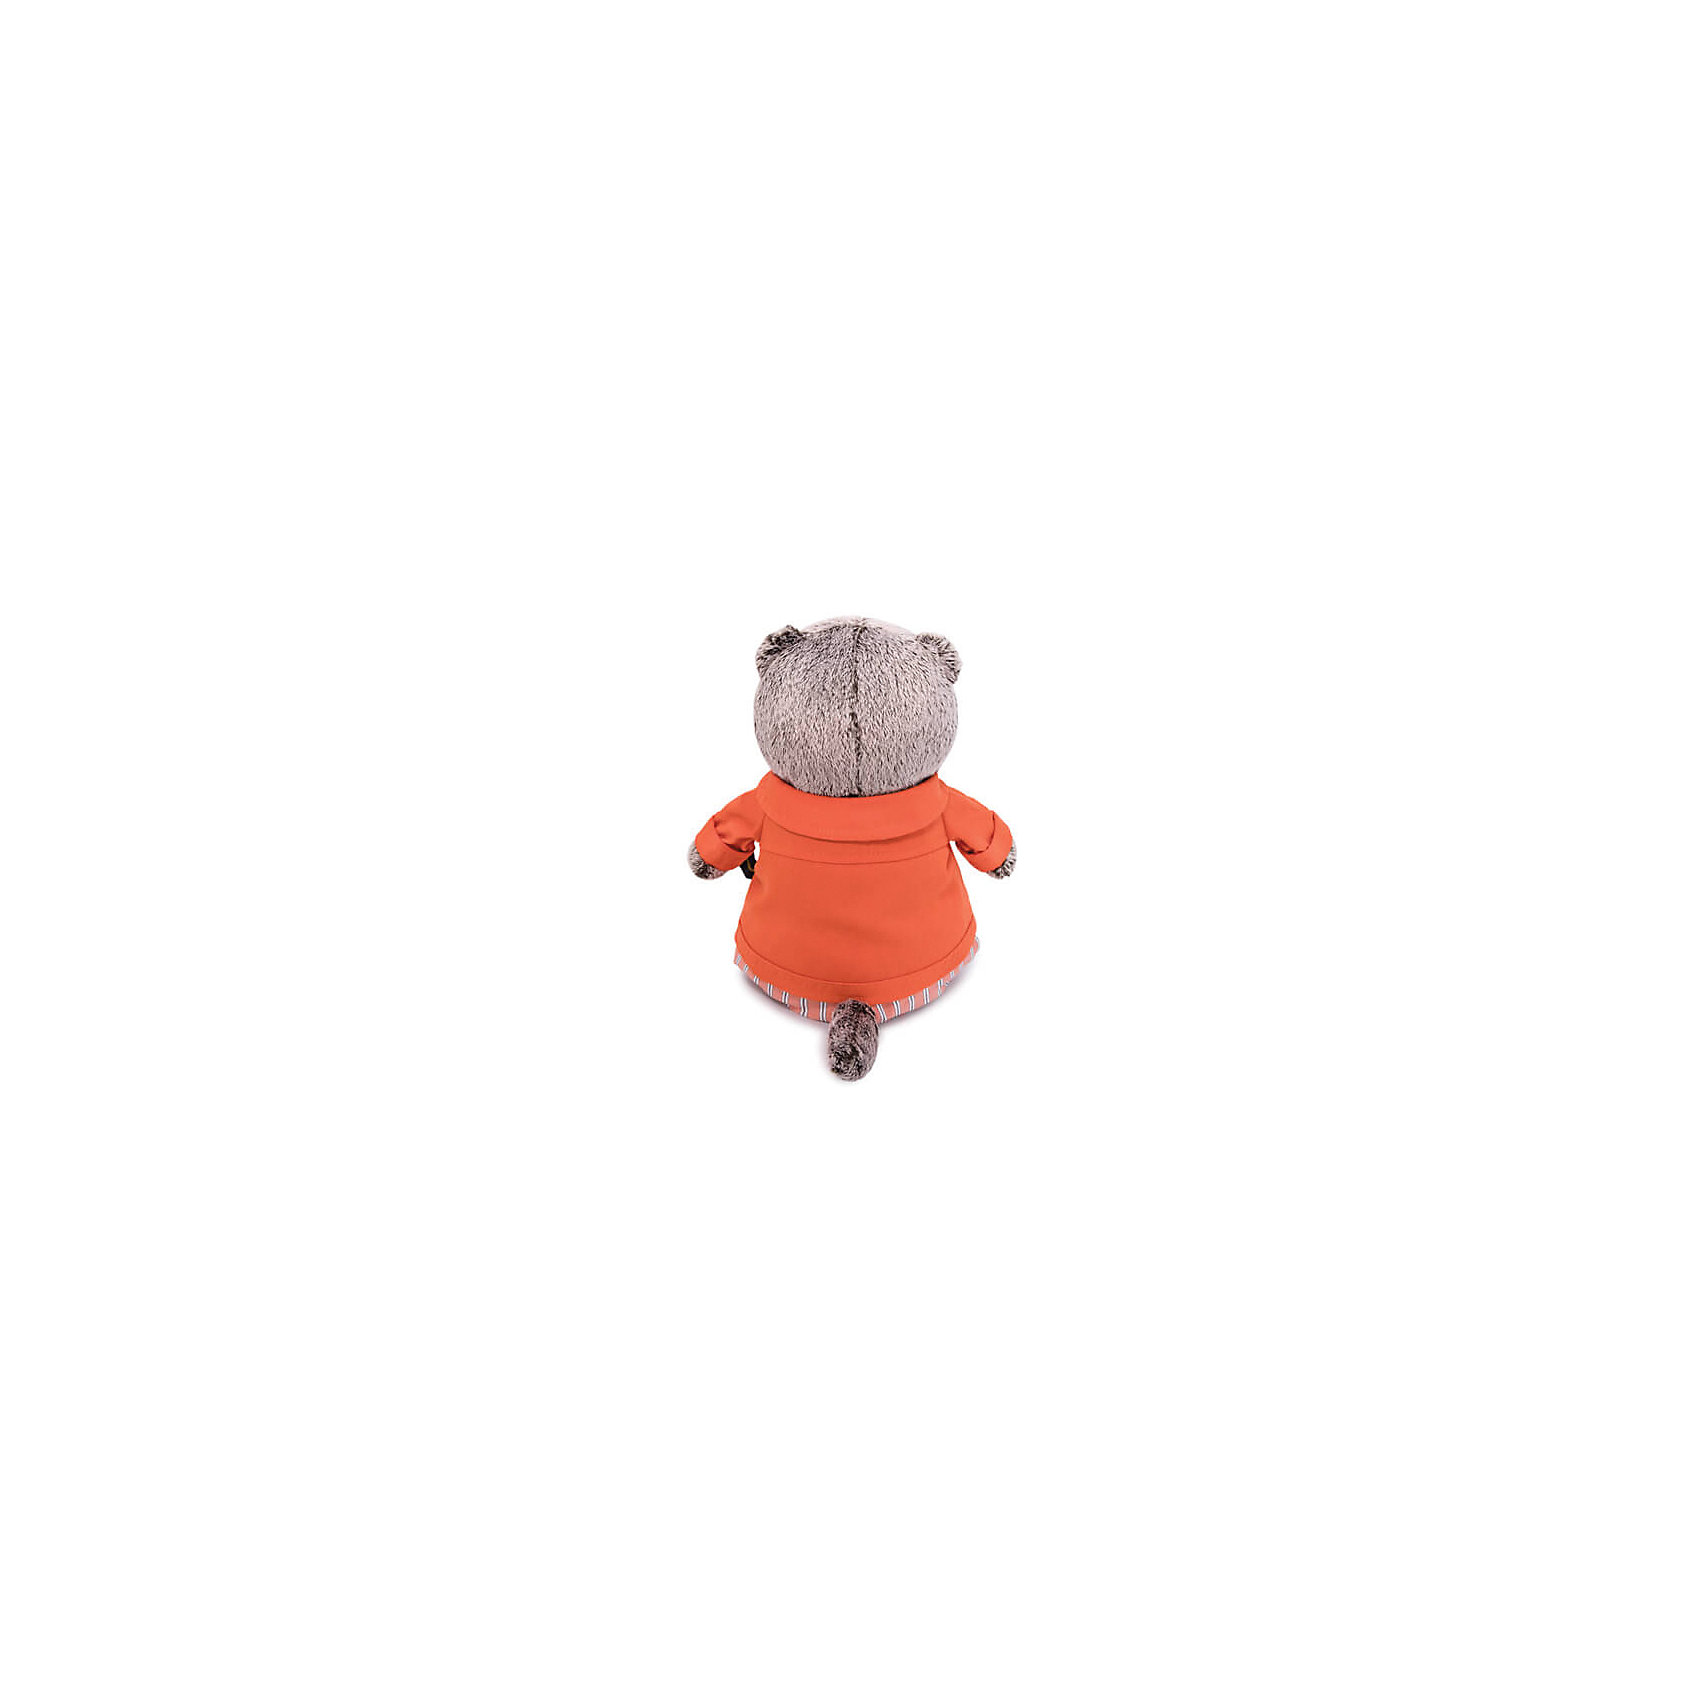 фото Мягкая игрушка budi basa кот басик в оранжевой куртке и штанах, 30 см